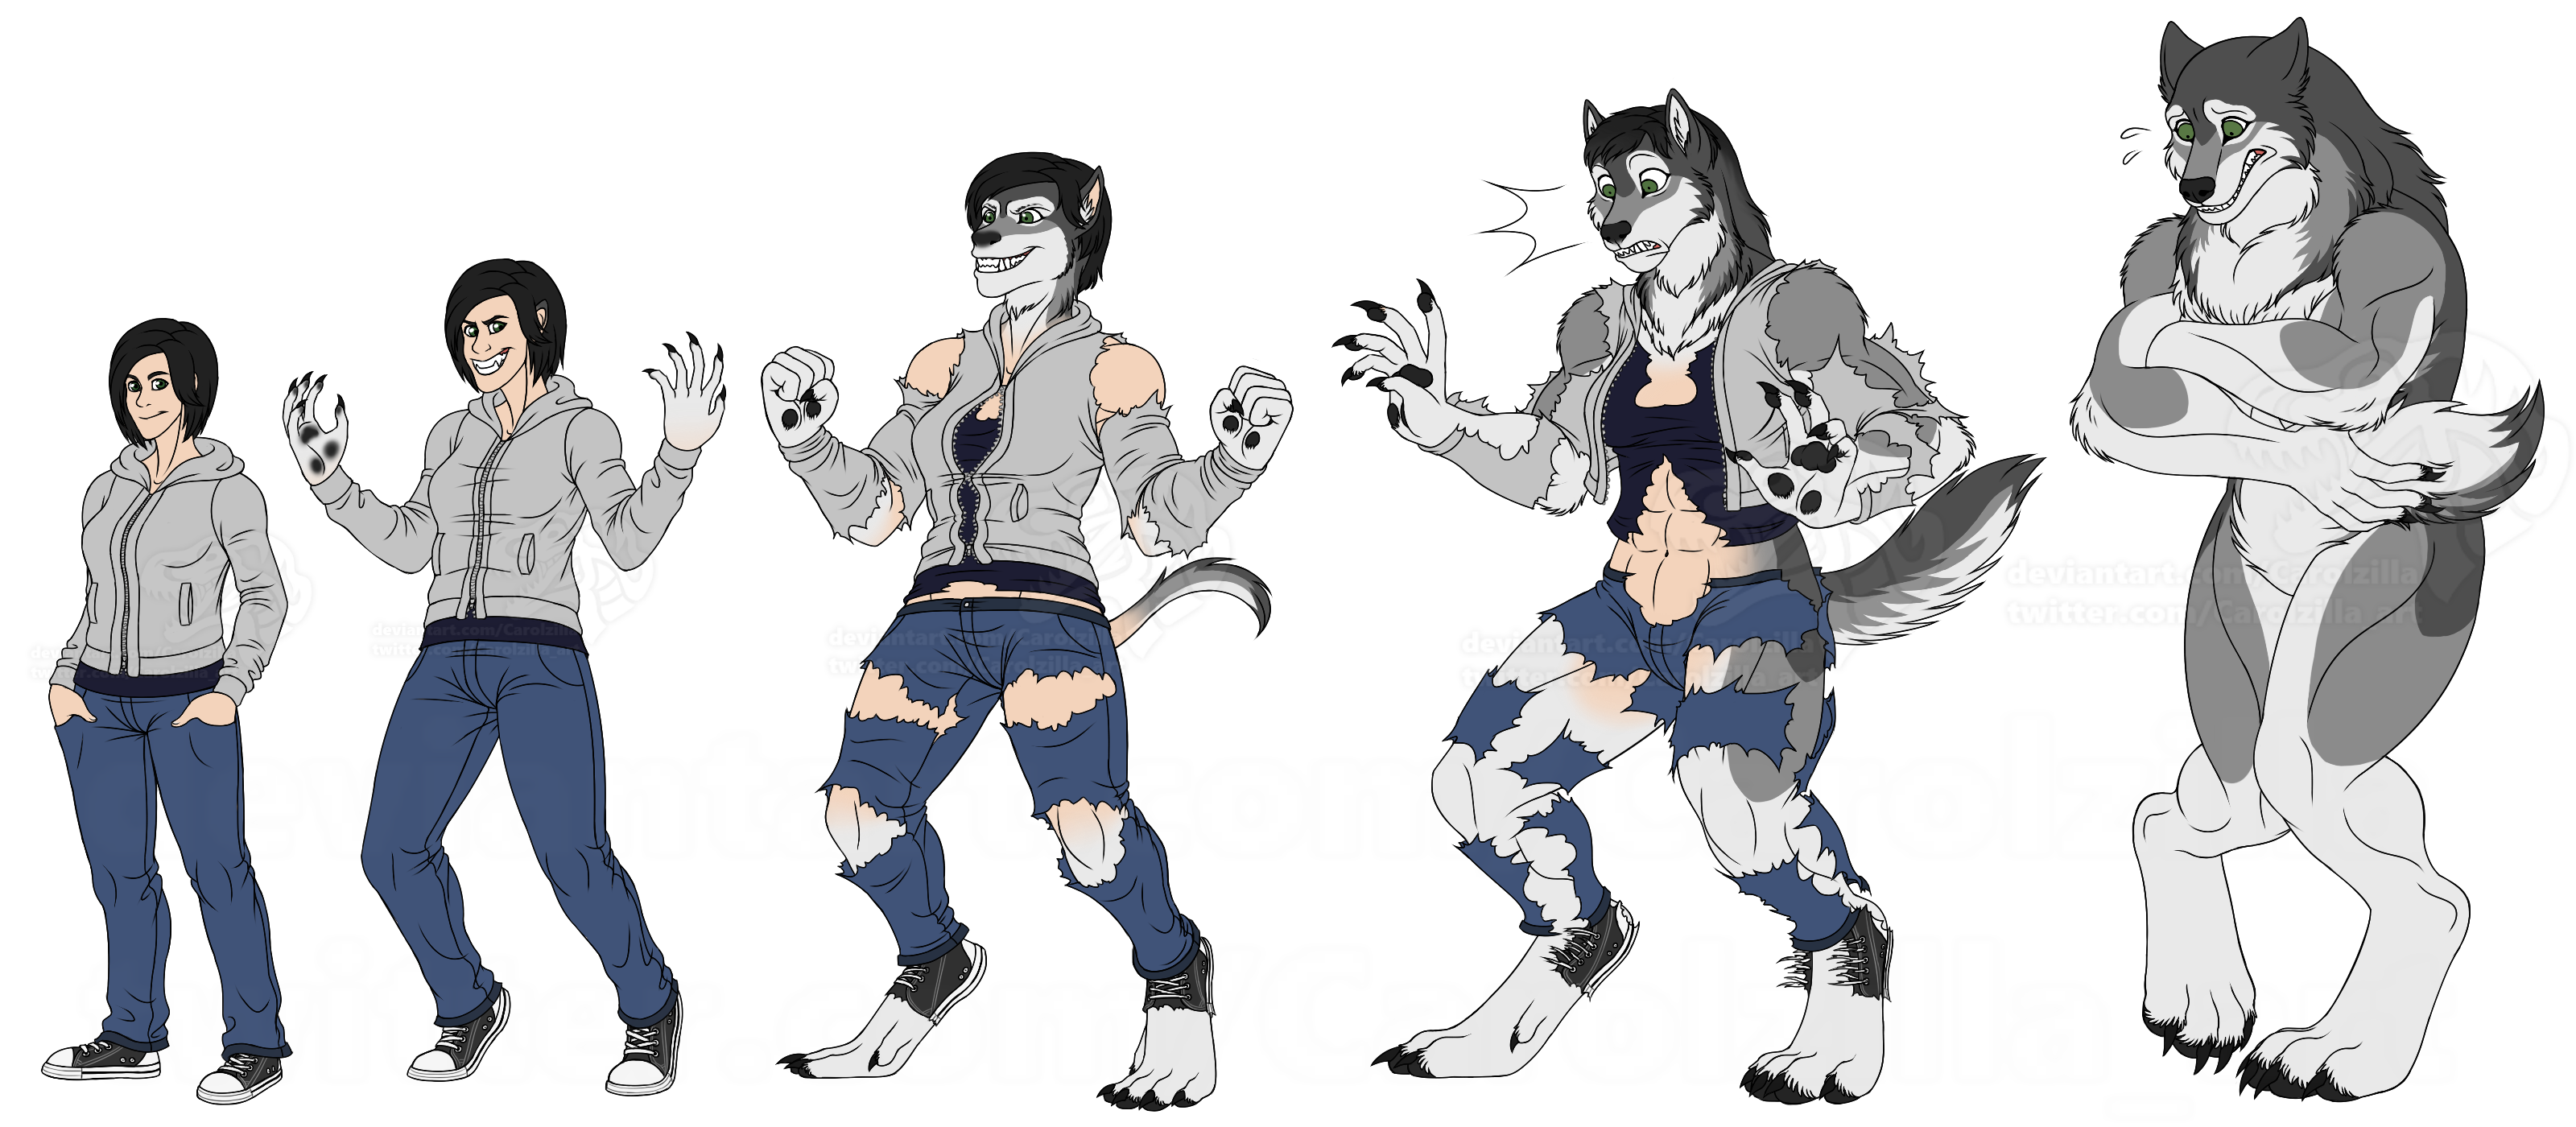 Female Werewolf Transformation Sequence